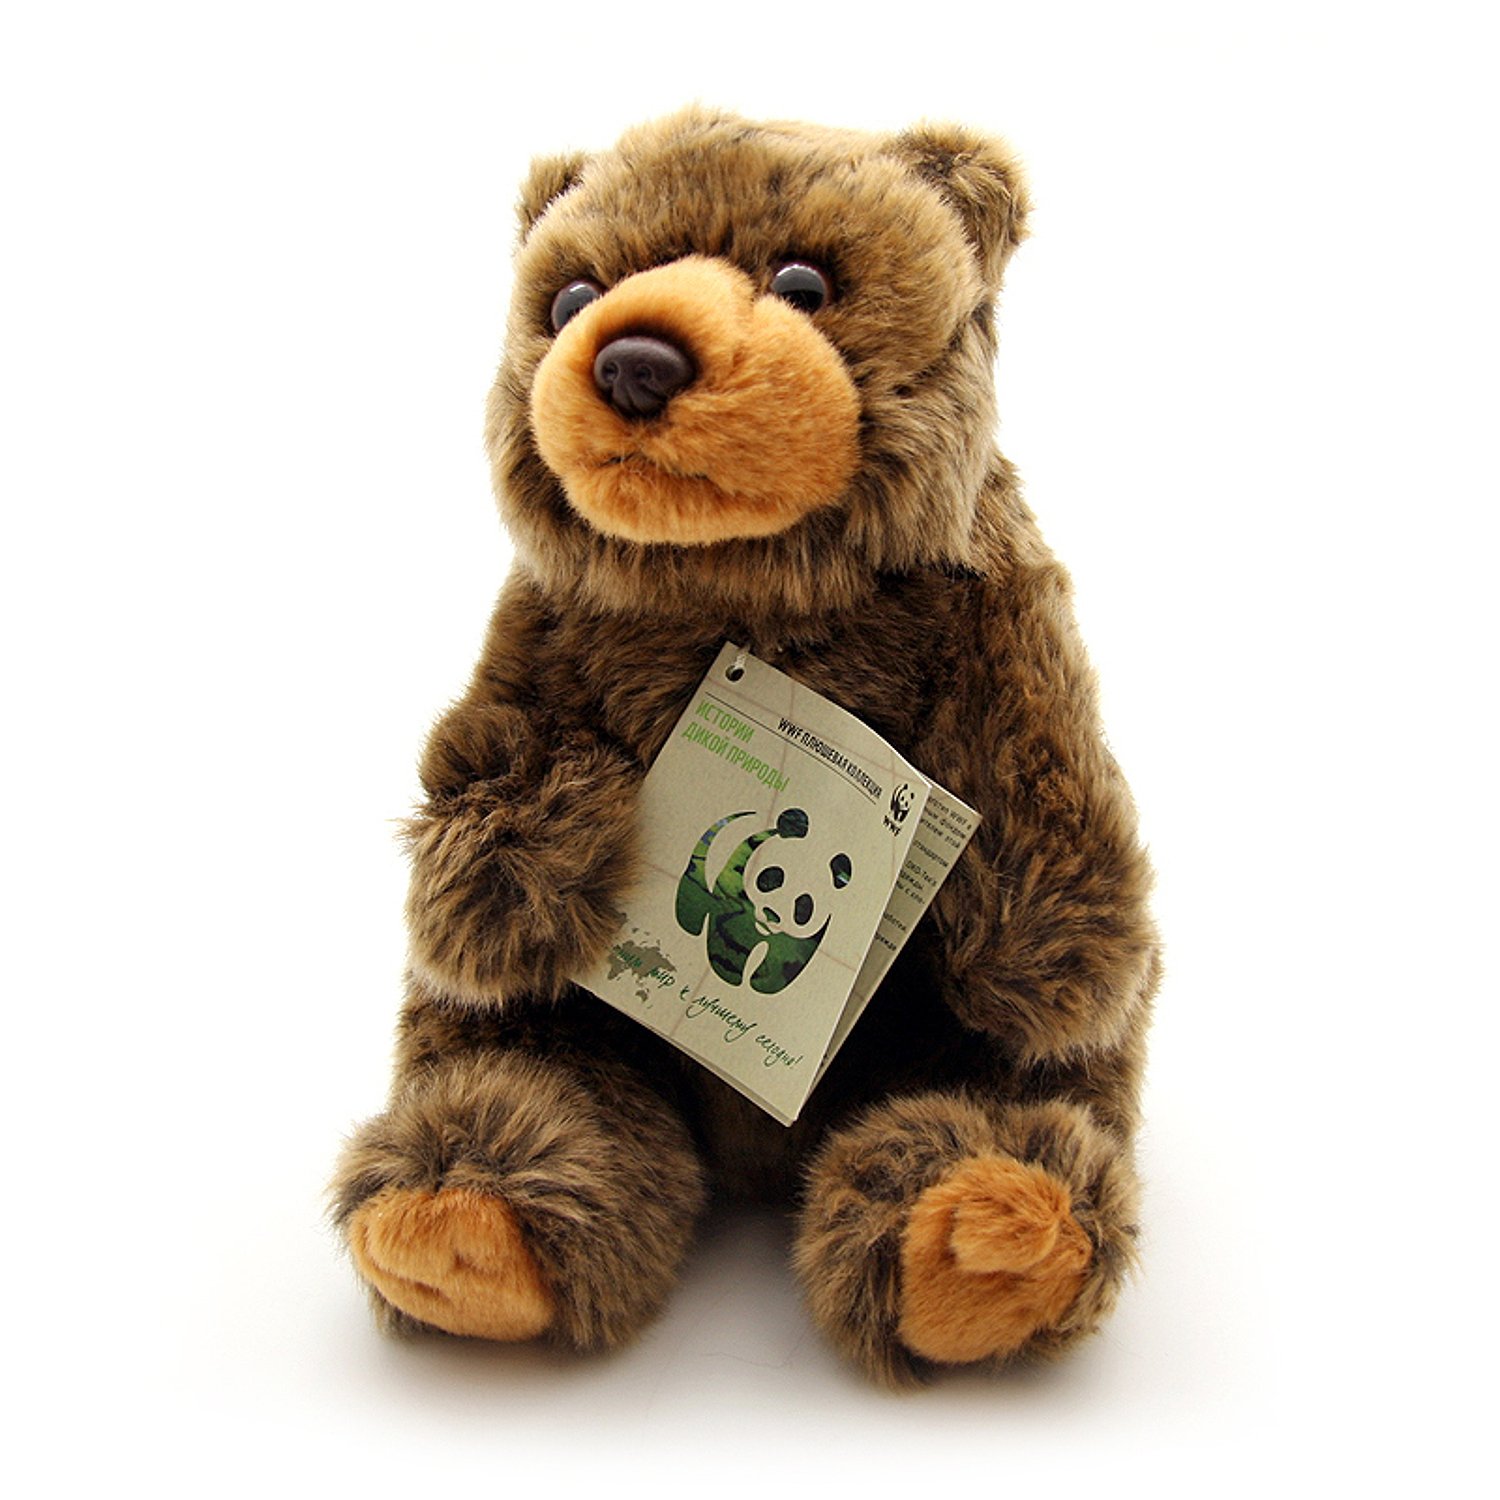 Мягкая игрушка Медведь бурый WWF 18 см 3d конструктор green planet голова благородного оленя квк бурый с текстурой шерсти коричневый